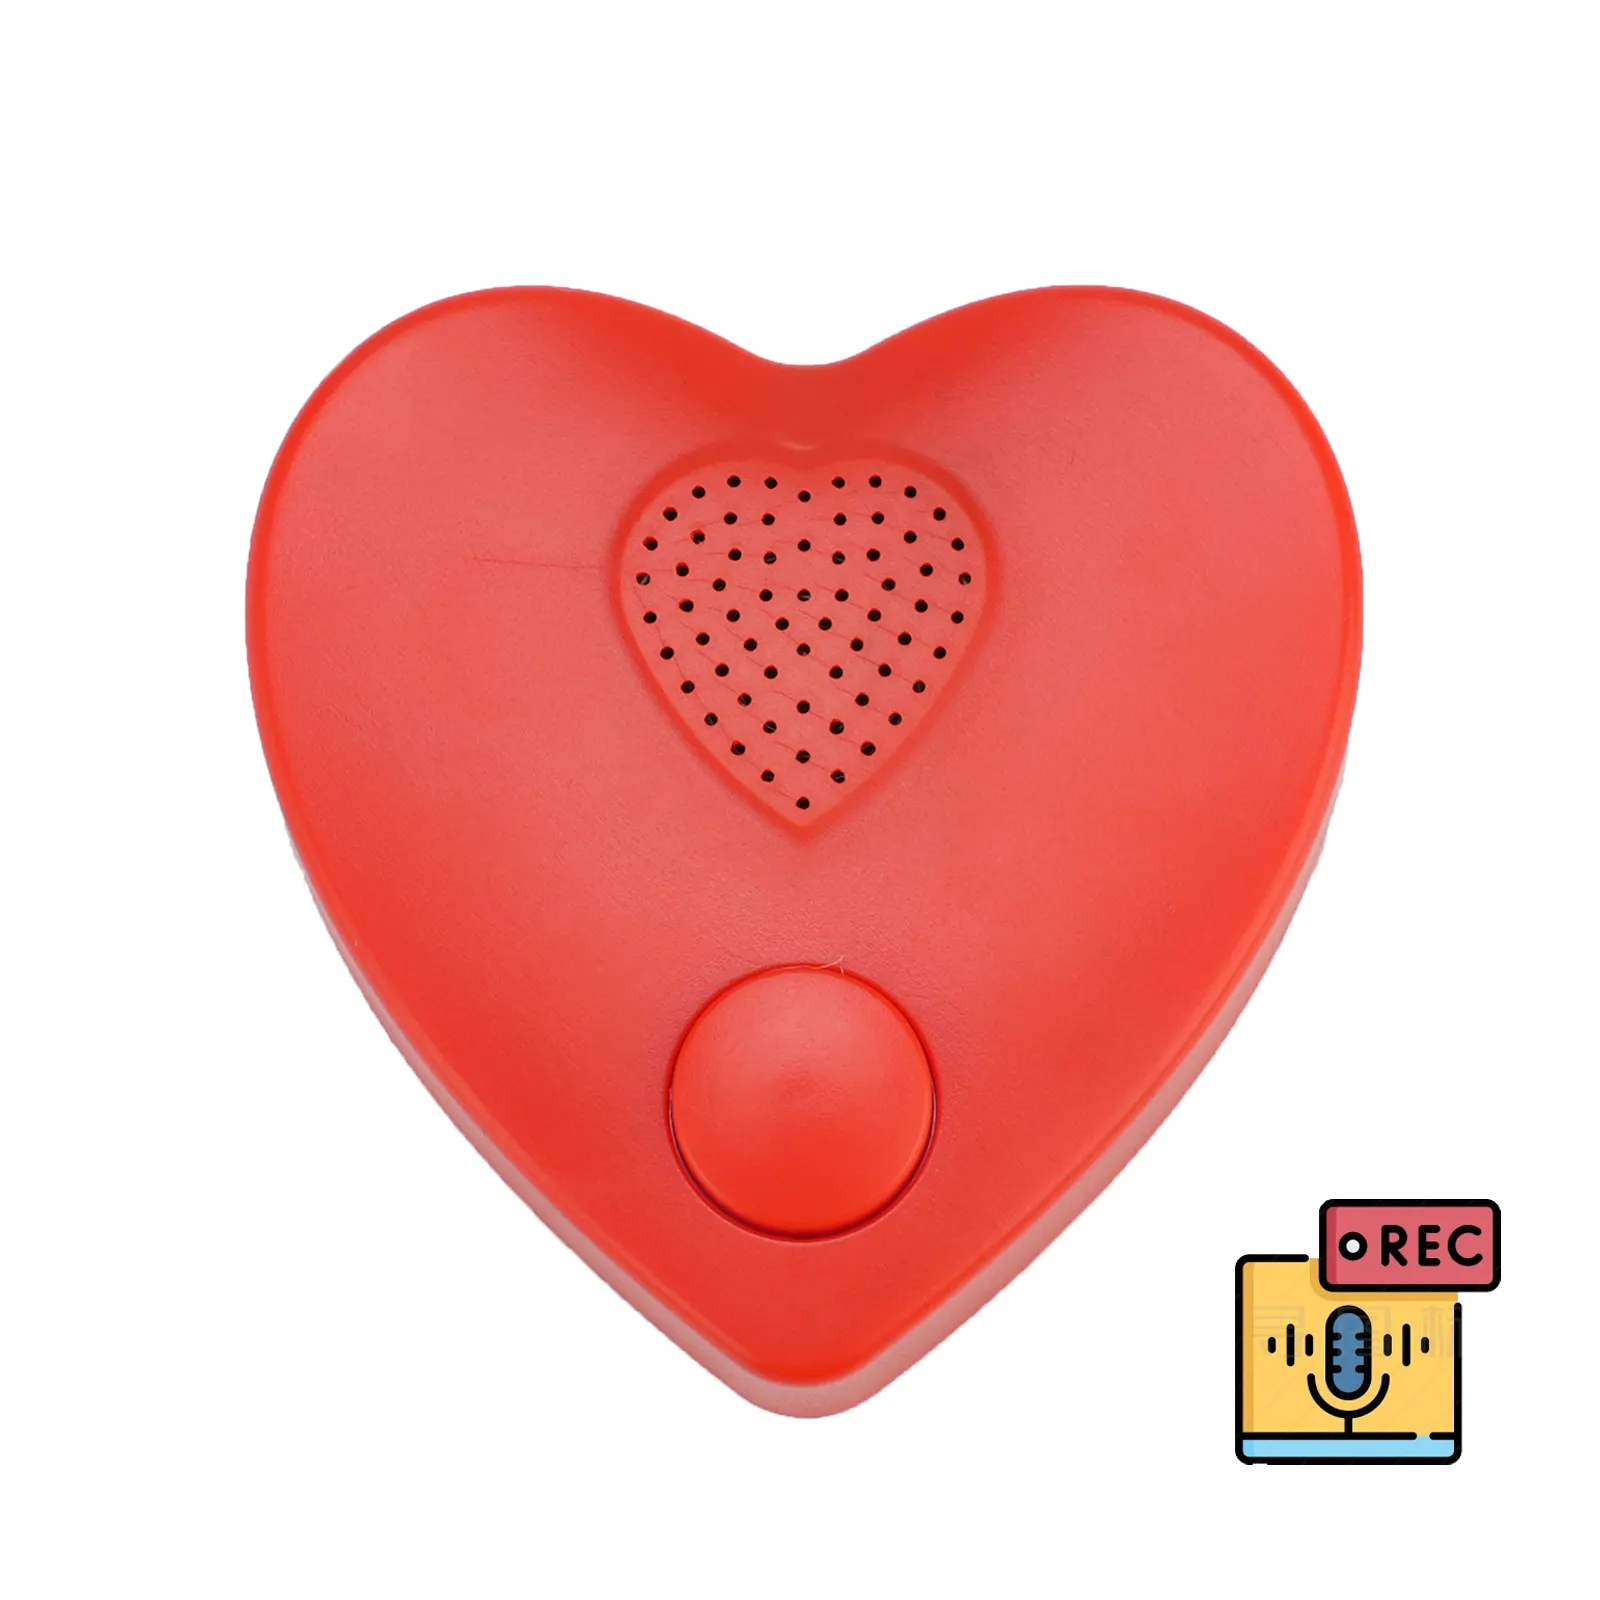 صندوق بلاستيكي لتسجيل الصوت على شكل قلب يمكن إرسال رسائل خاصة إليه وحدة موسيقى للألعاب القطيفة والوسائد المحشوة التي تحتوي على حيوانات